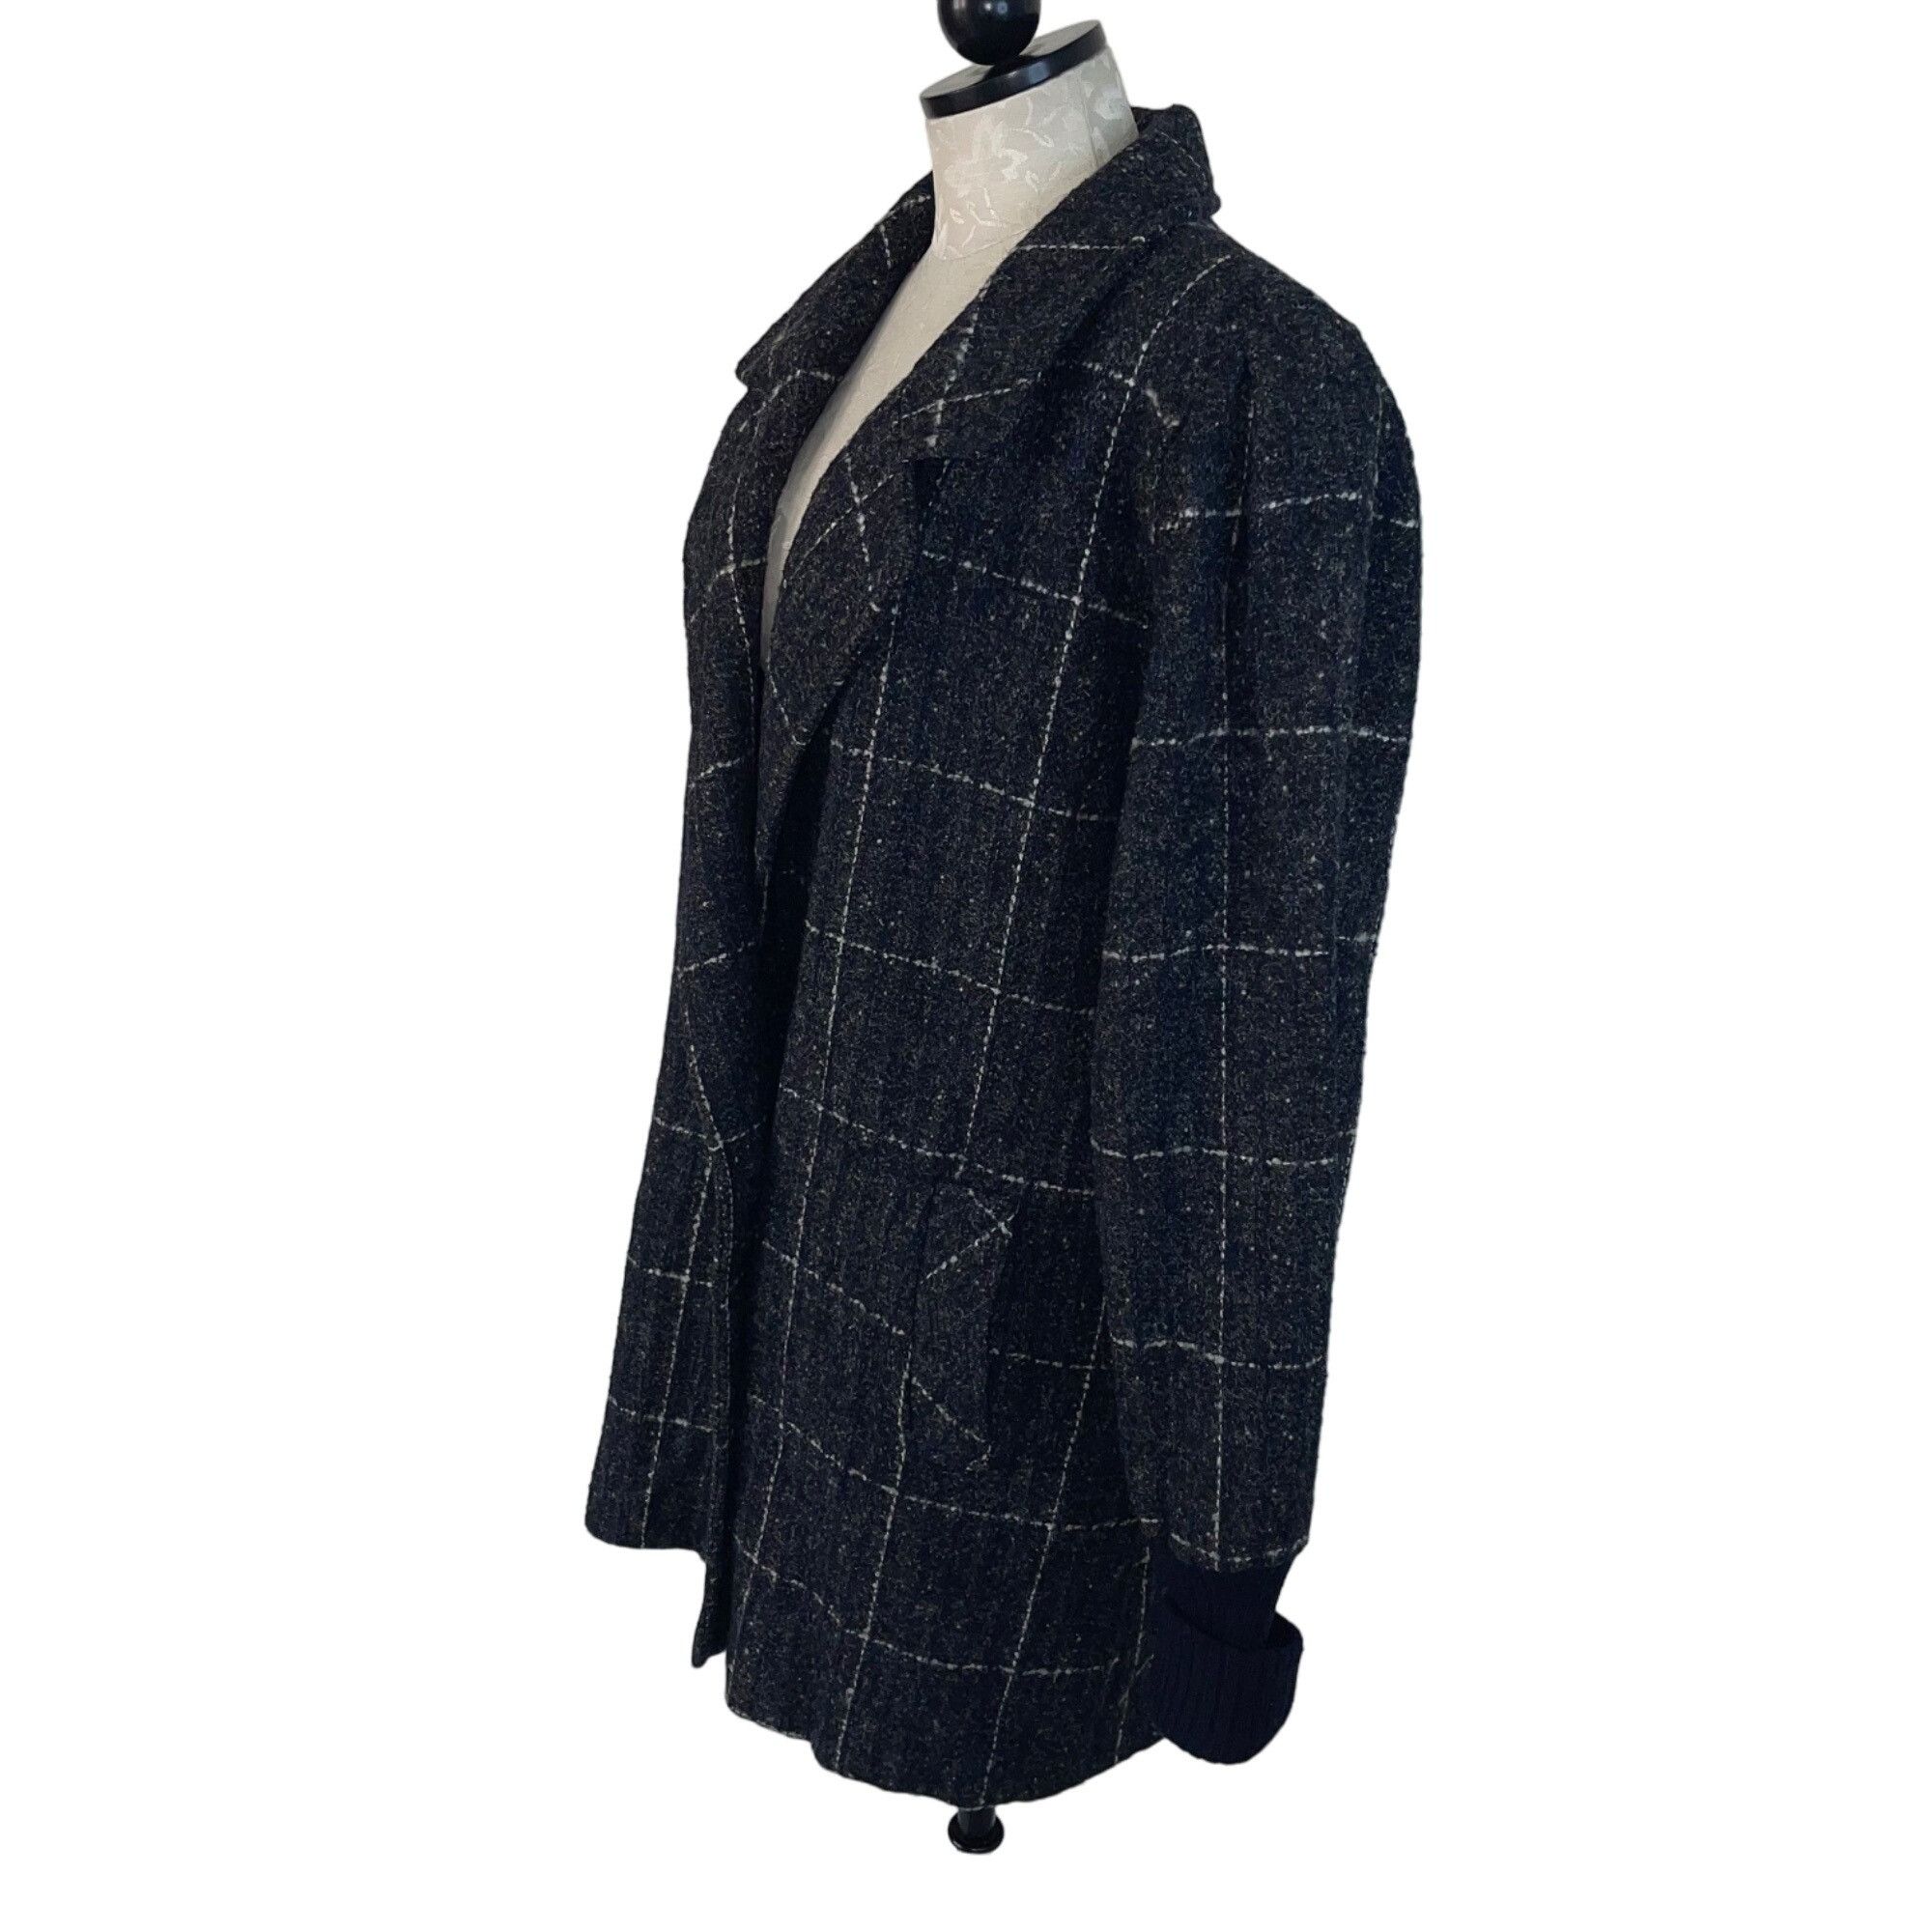 Vintage Saril Ltd Vintage Womens Coat Size Large Gray Plaid Pockets Size L / US 10 / IT 46 - 2 Preview